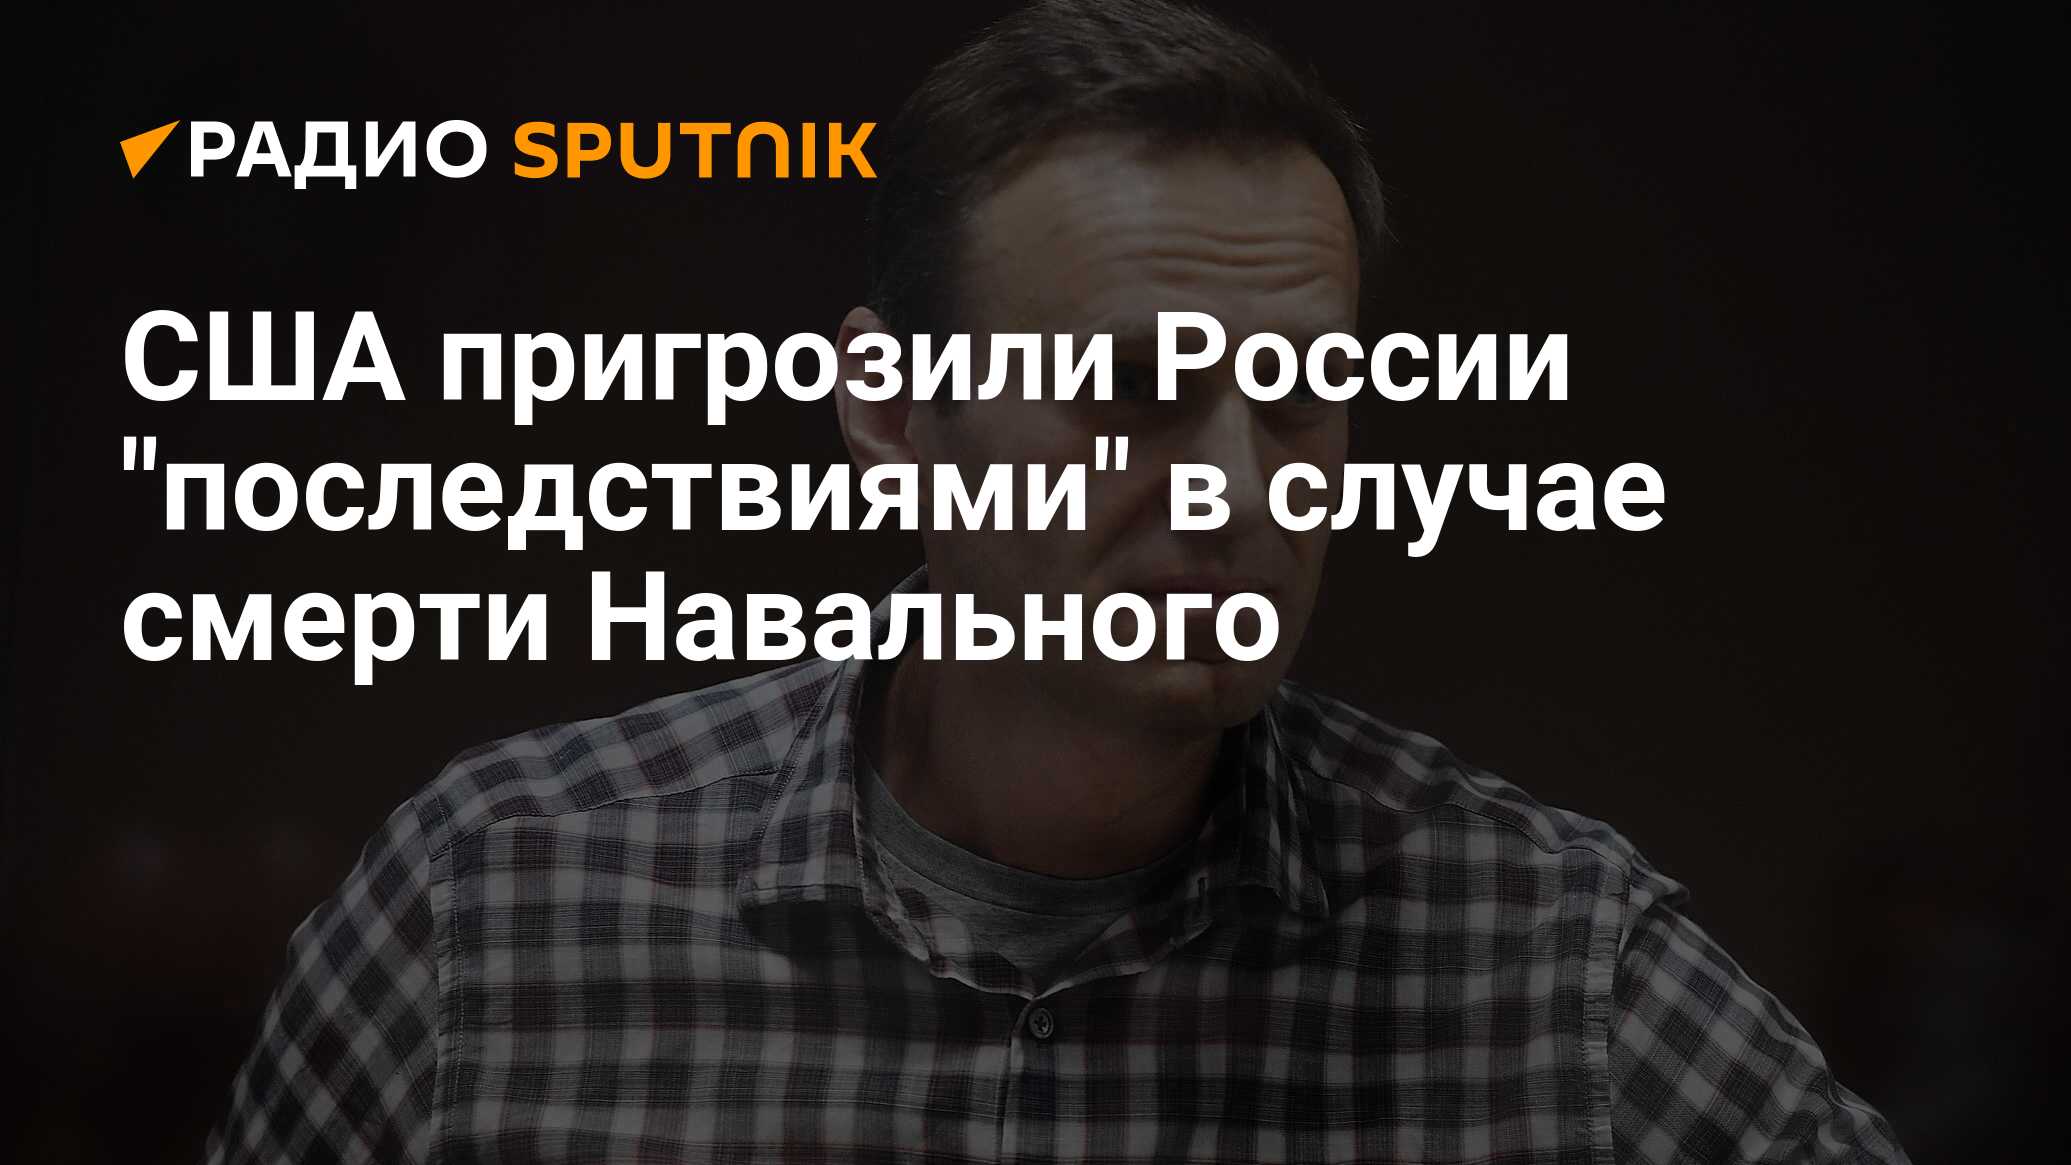 Когда 40 дней после смерти навального. Дата смерти Навального. Смерть Навального для России. Версия с Навальным смерти.